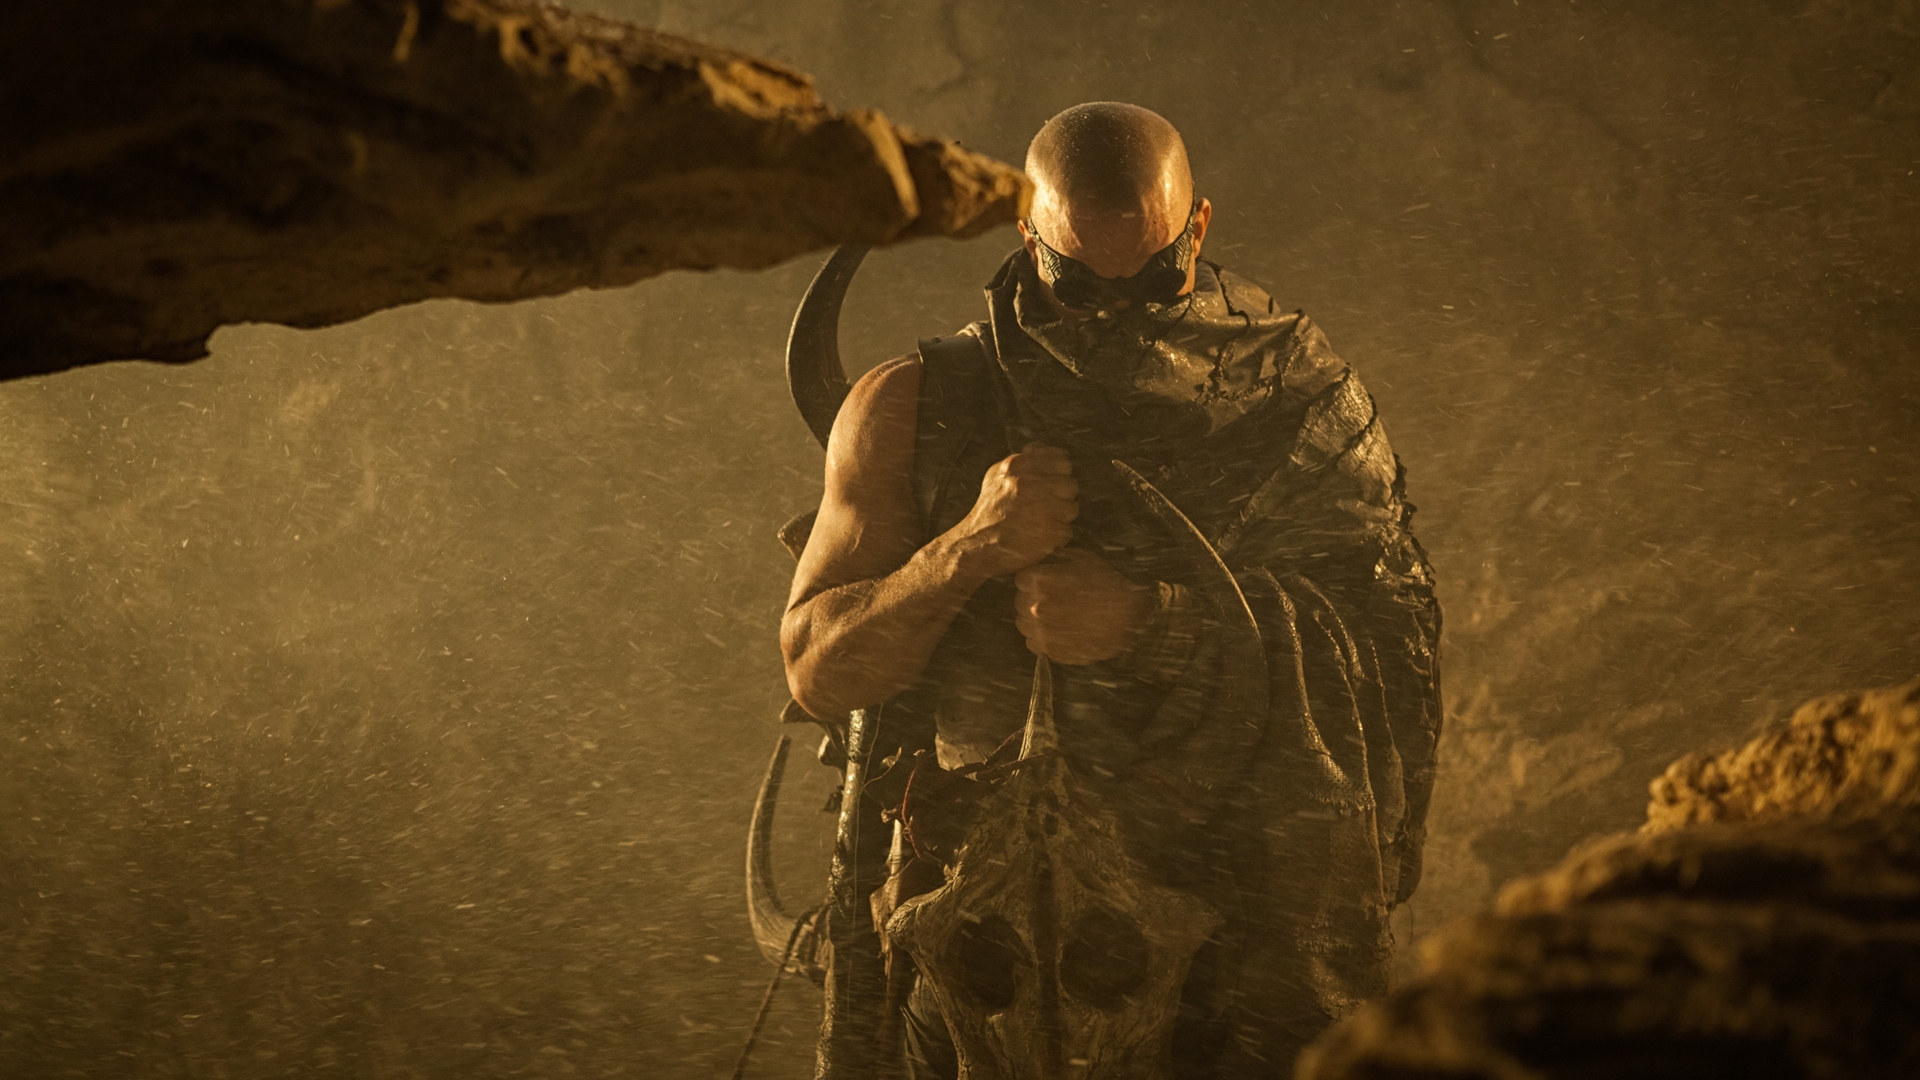 Vin Diesel Riddick 2013 for 1920 x 1080 HDTV 1080p resolution